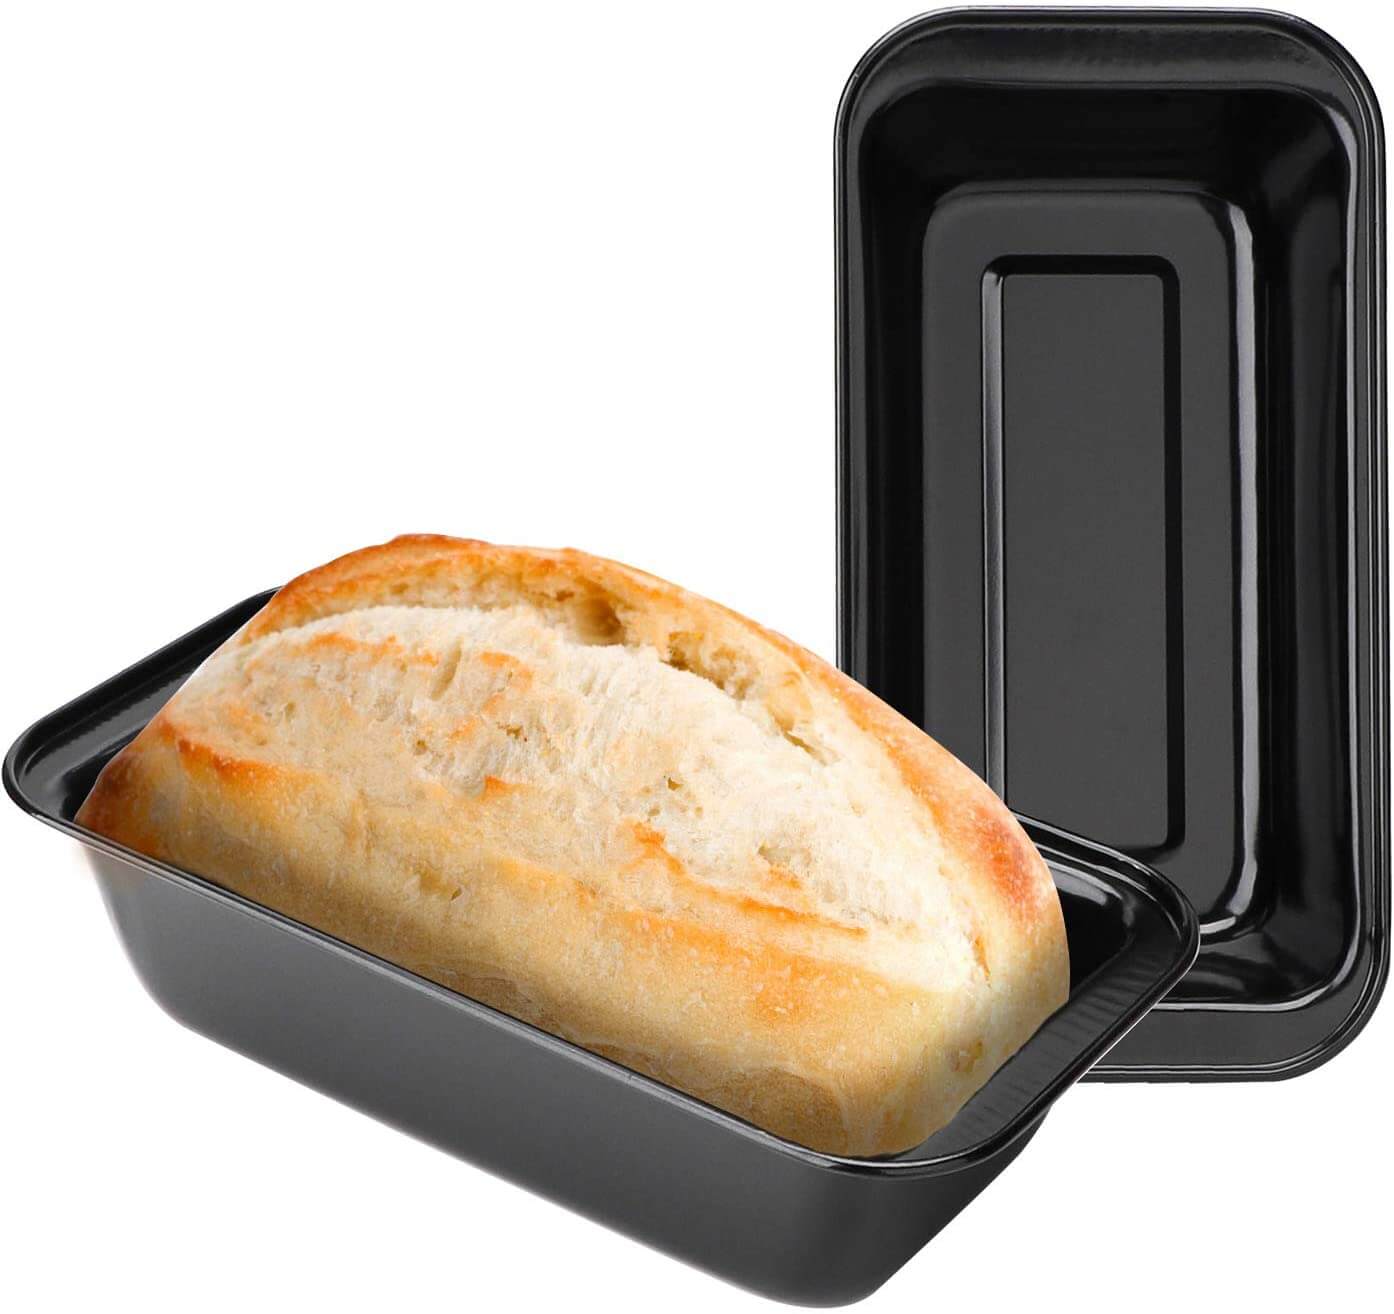 Beasea Loaf Pan